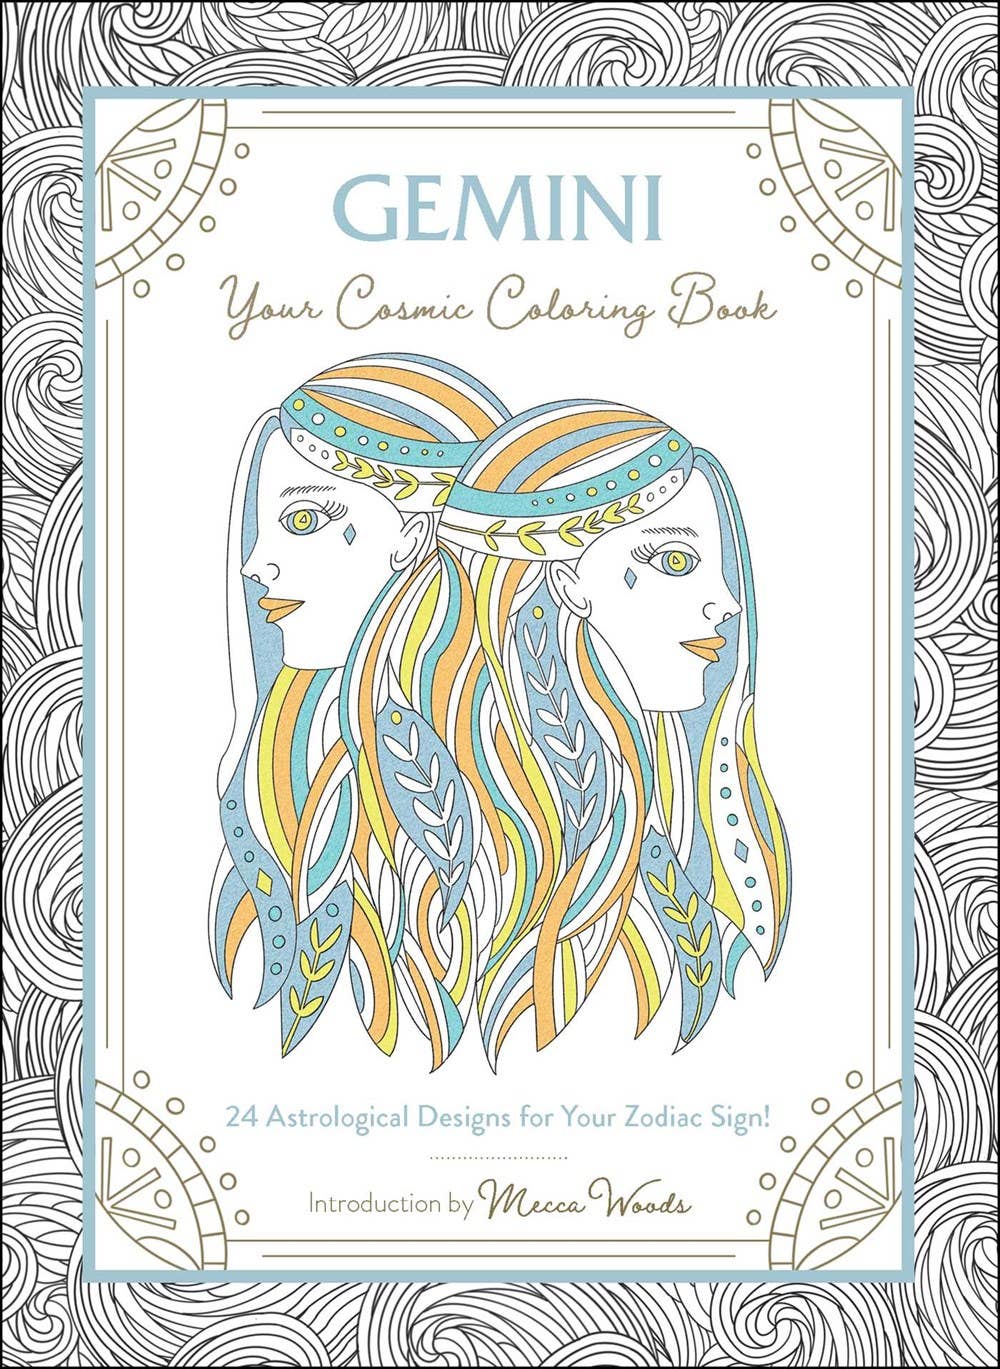 Gemini Cosmic Coloring Book